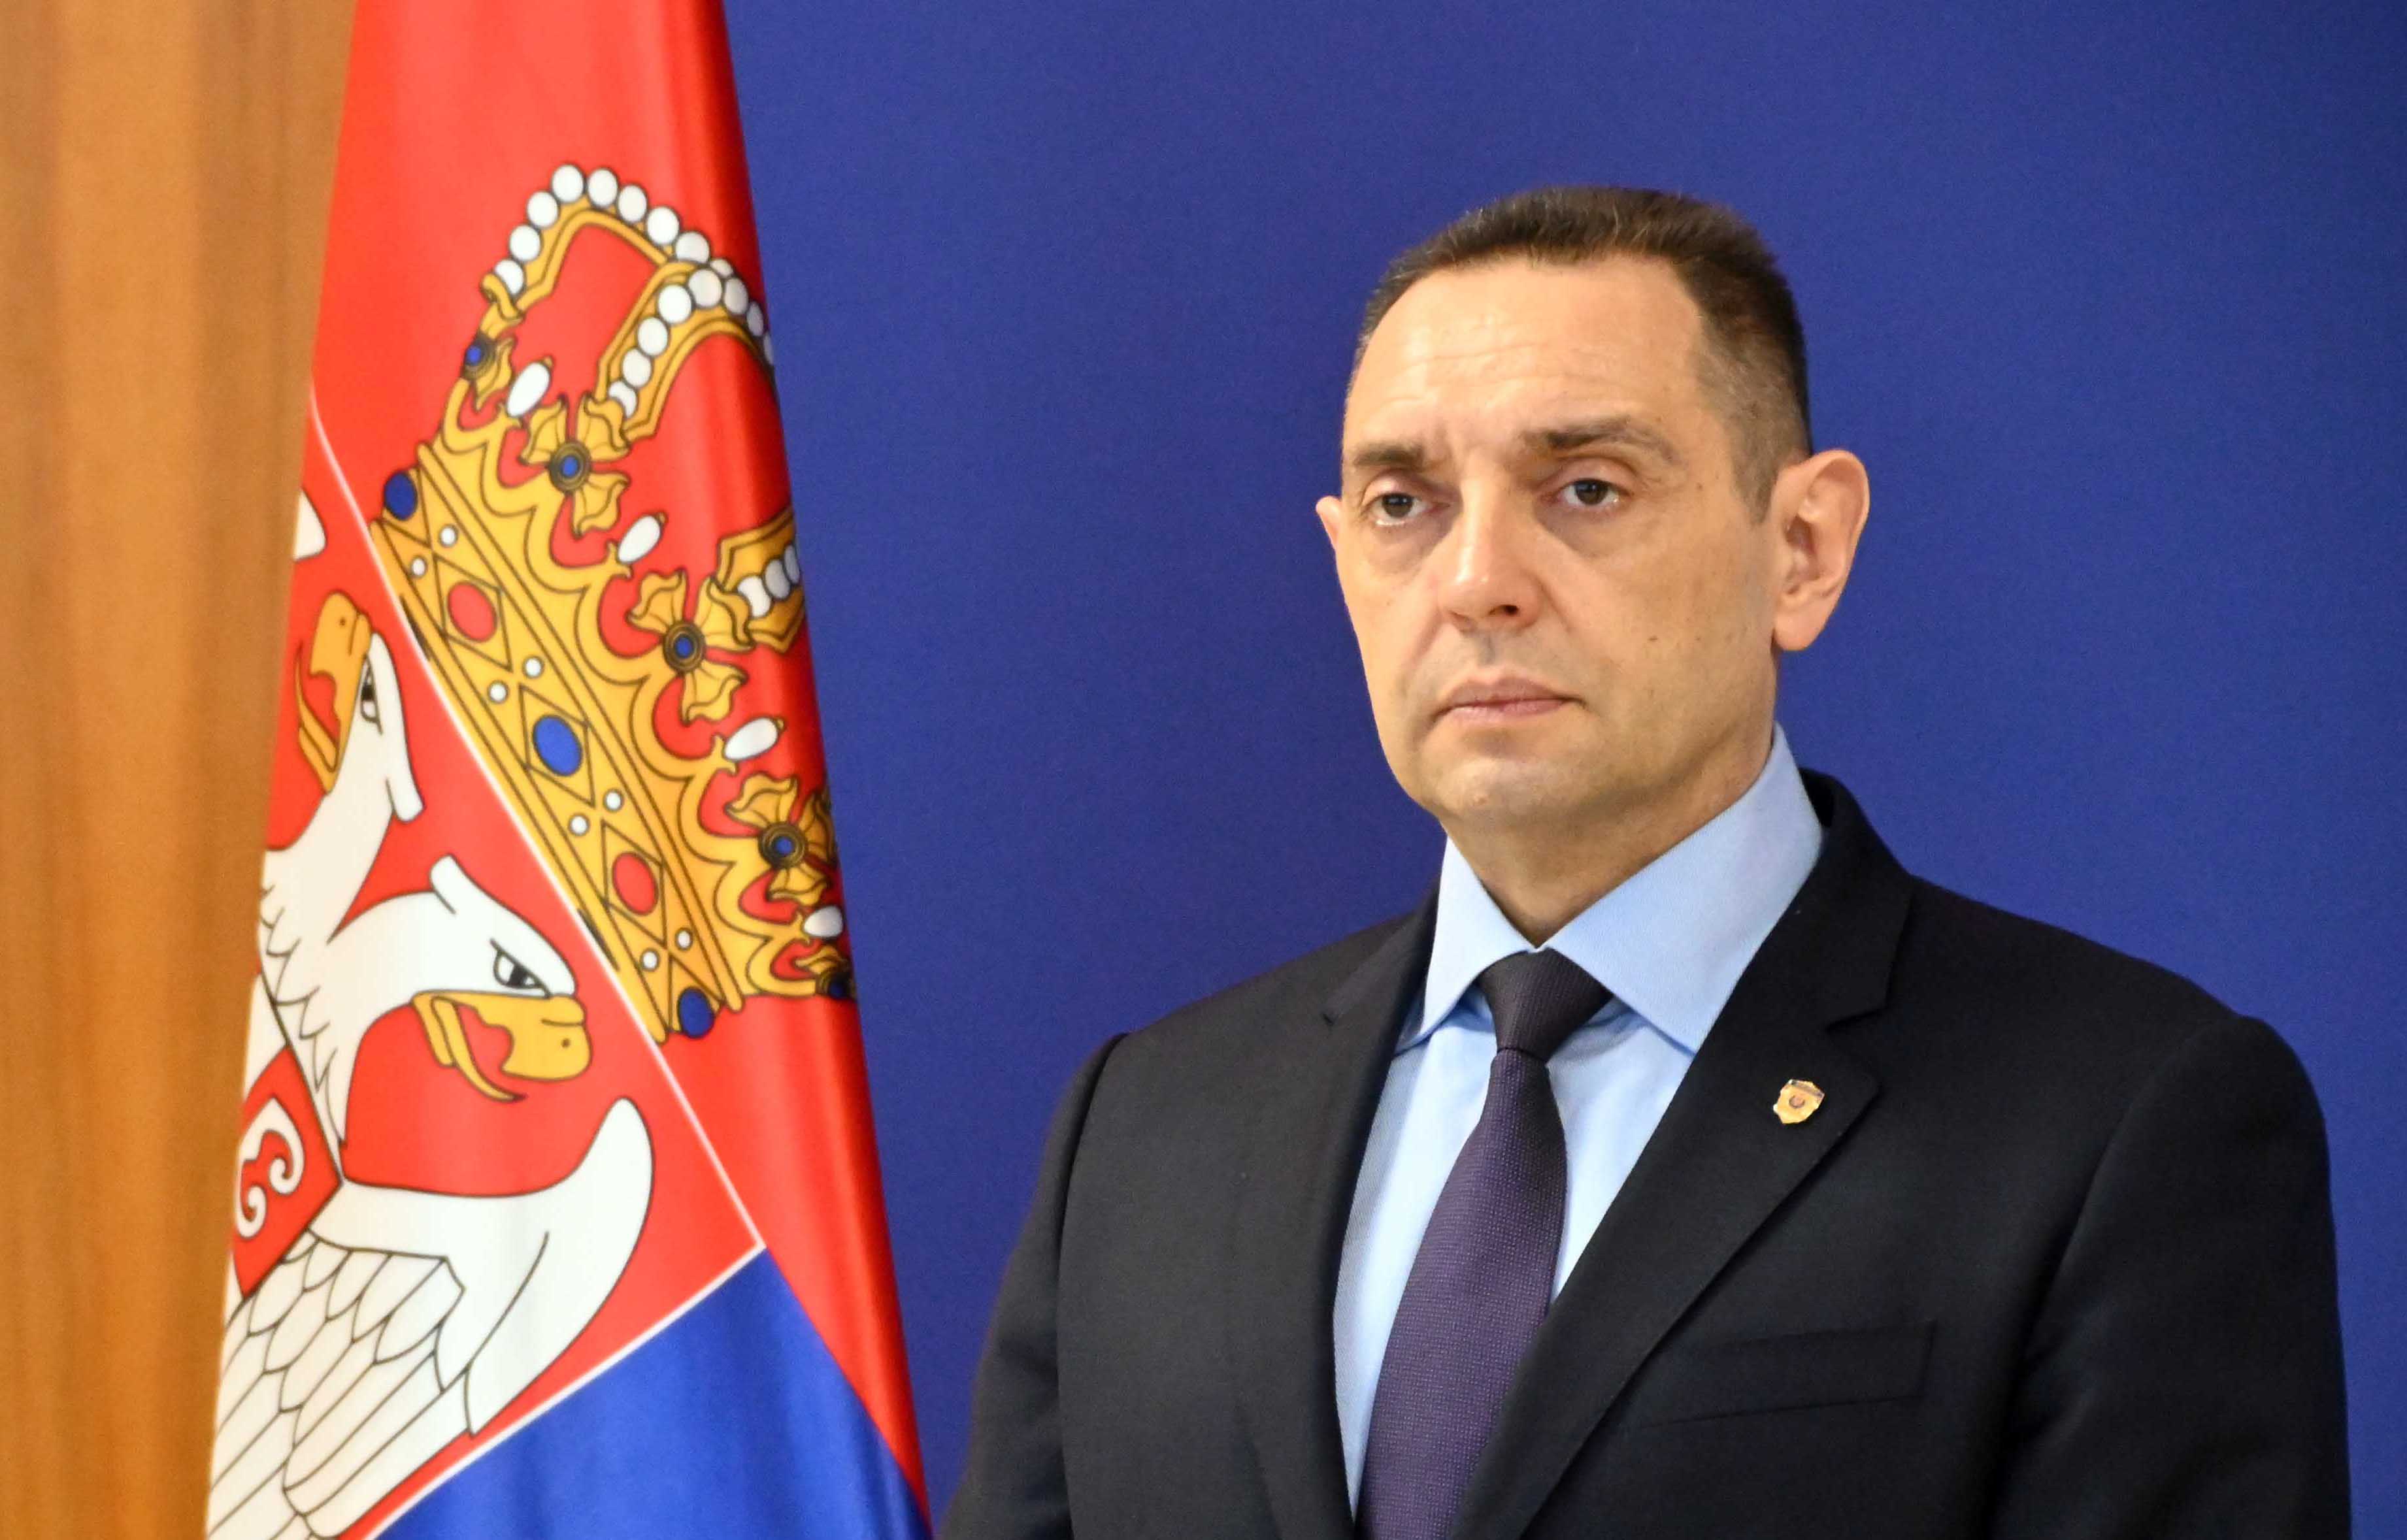 Ministar Aleksandar Vulin odgovorio Osmani: Srbija nije ničiji satelit, ali Priština jeste i samostalna je koliko je i Stepinac svetac